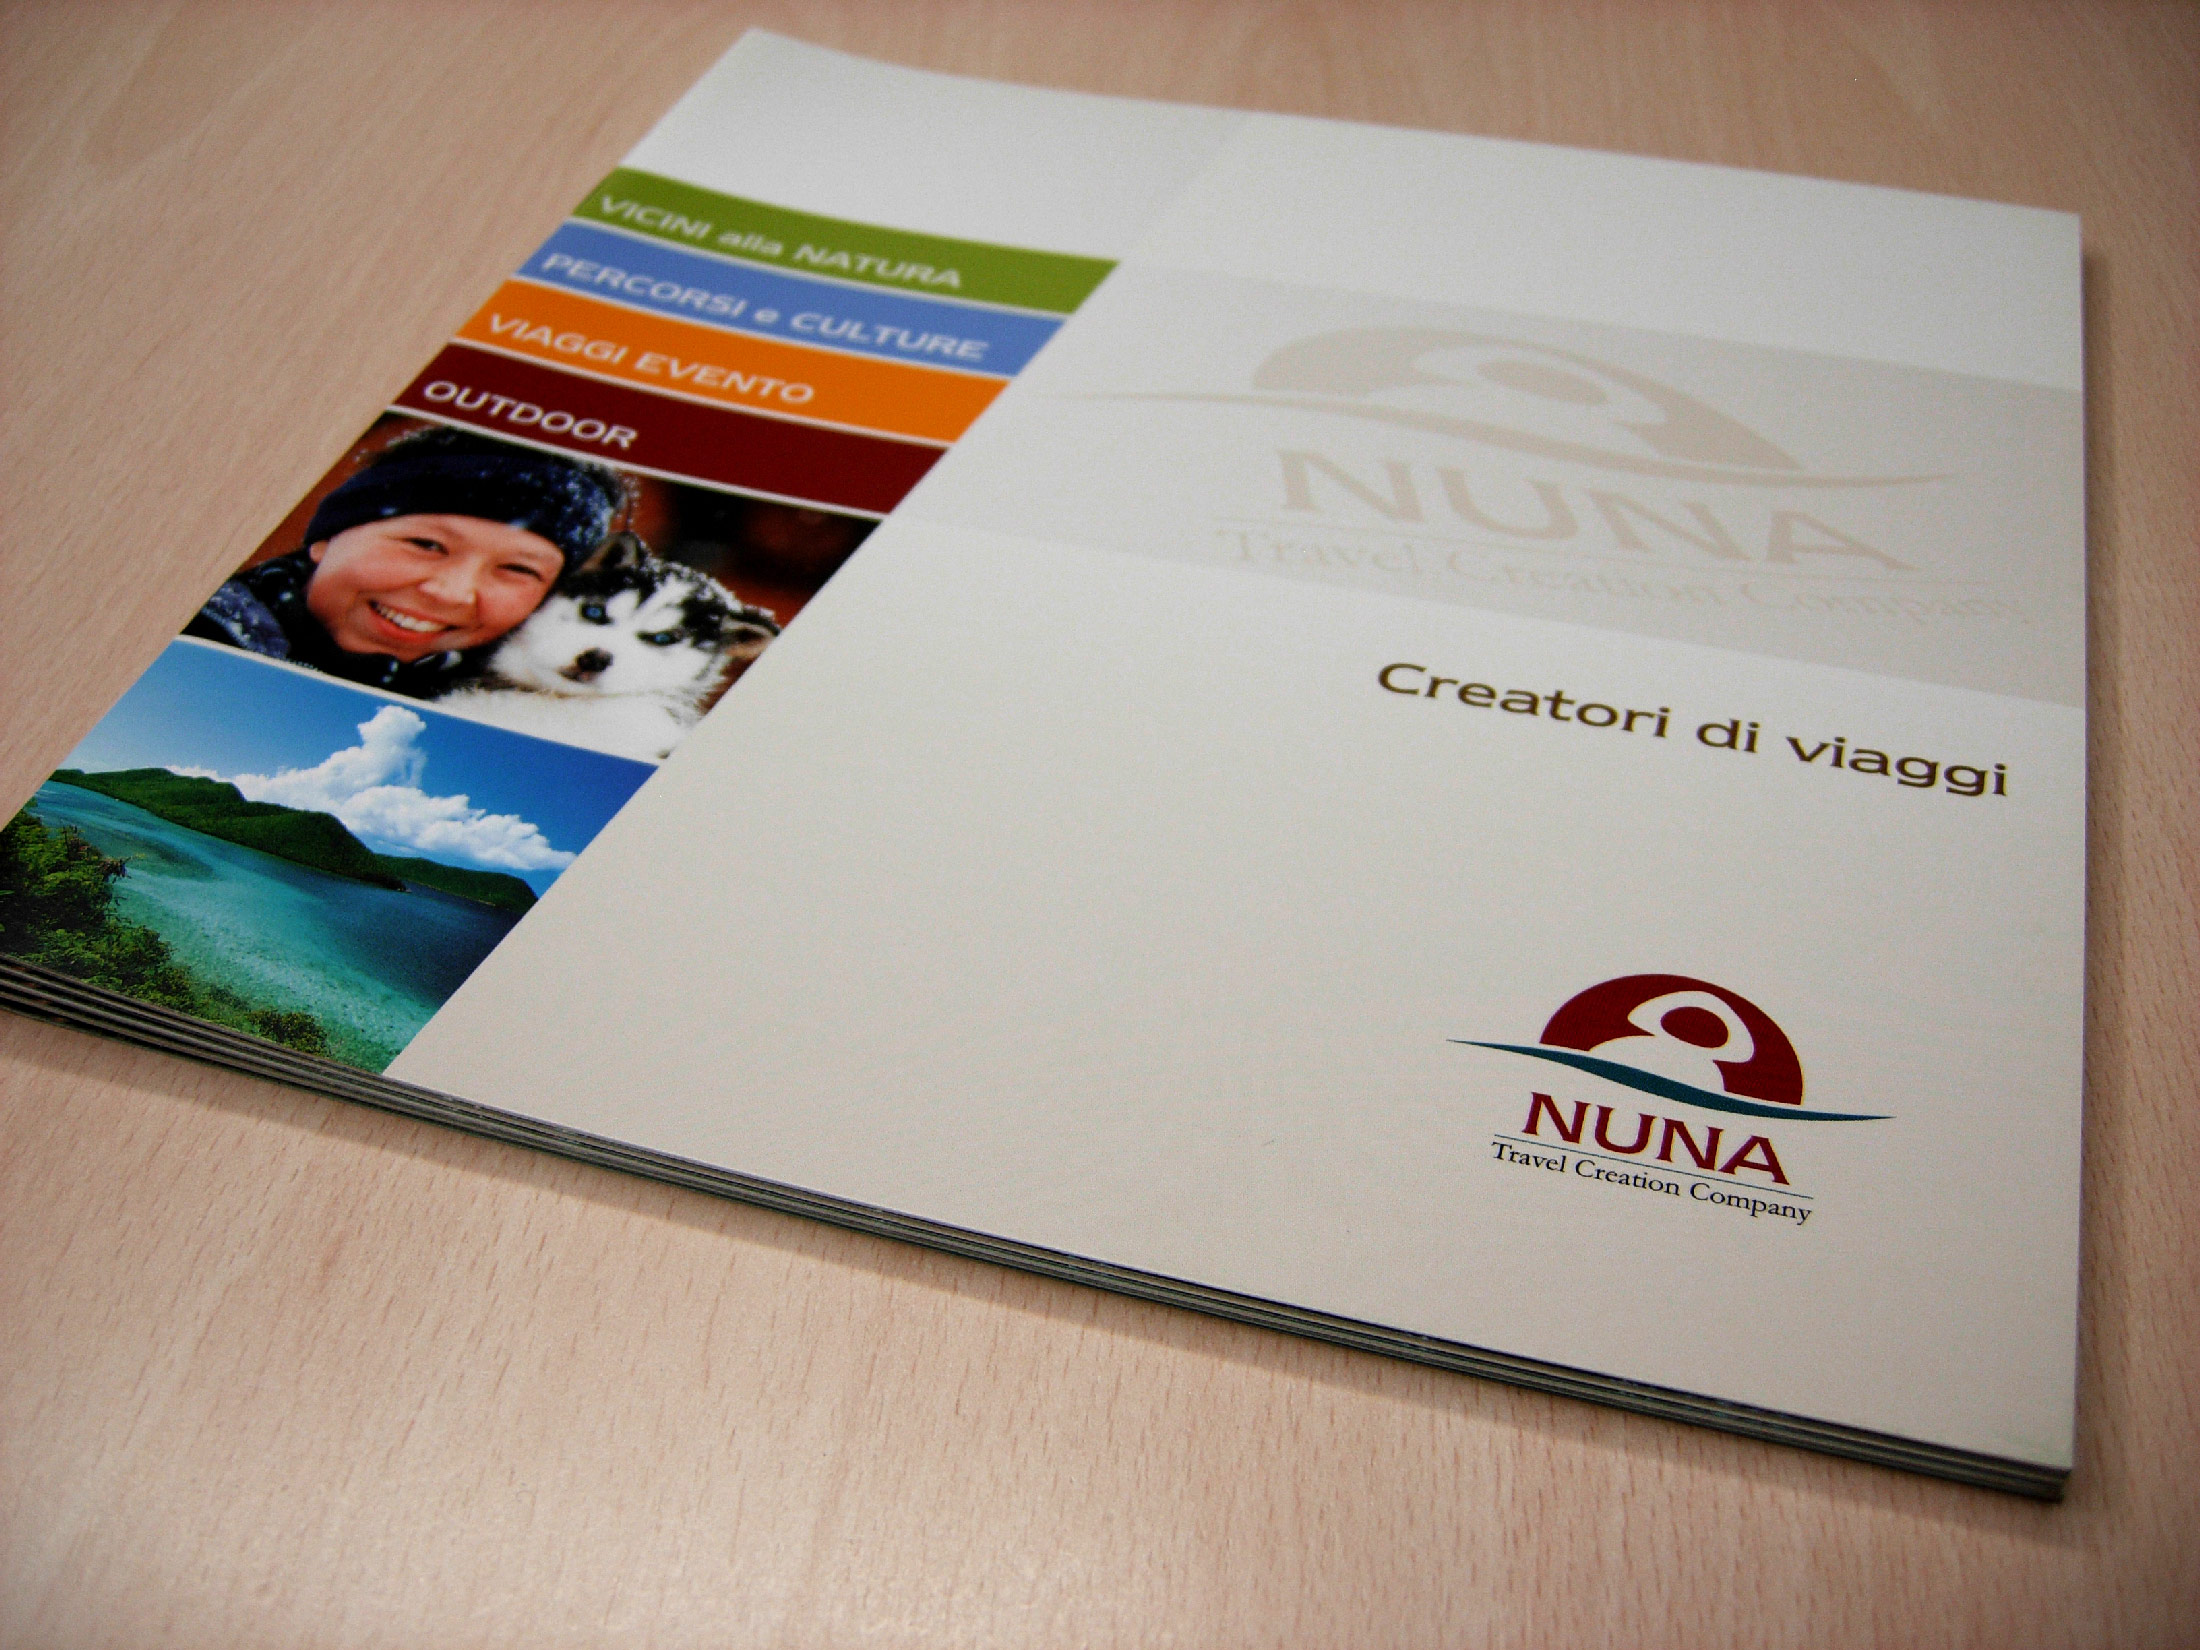 Nuna Travel nuova linea di prodotti - Cover brochure 2006